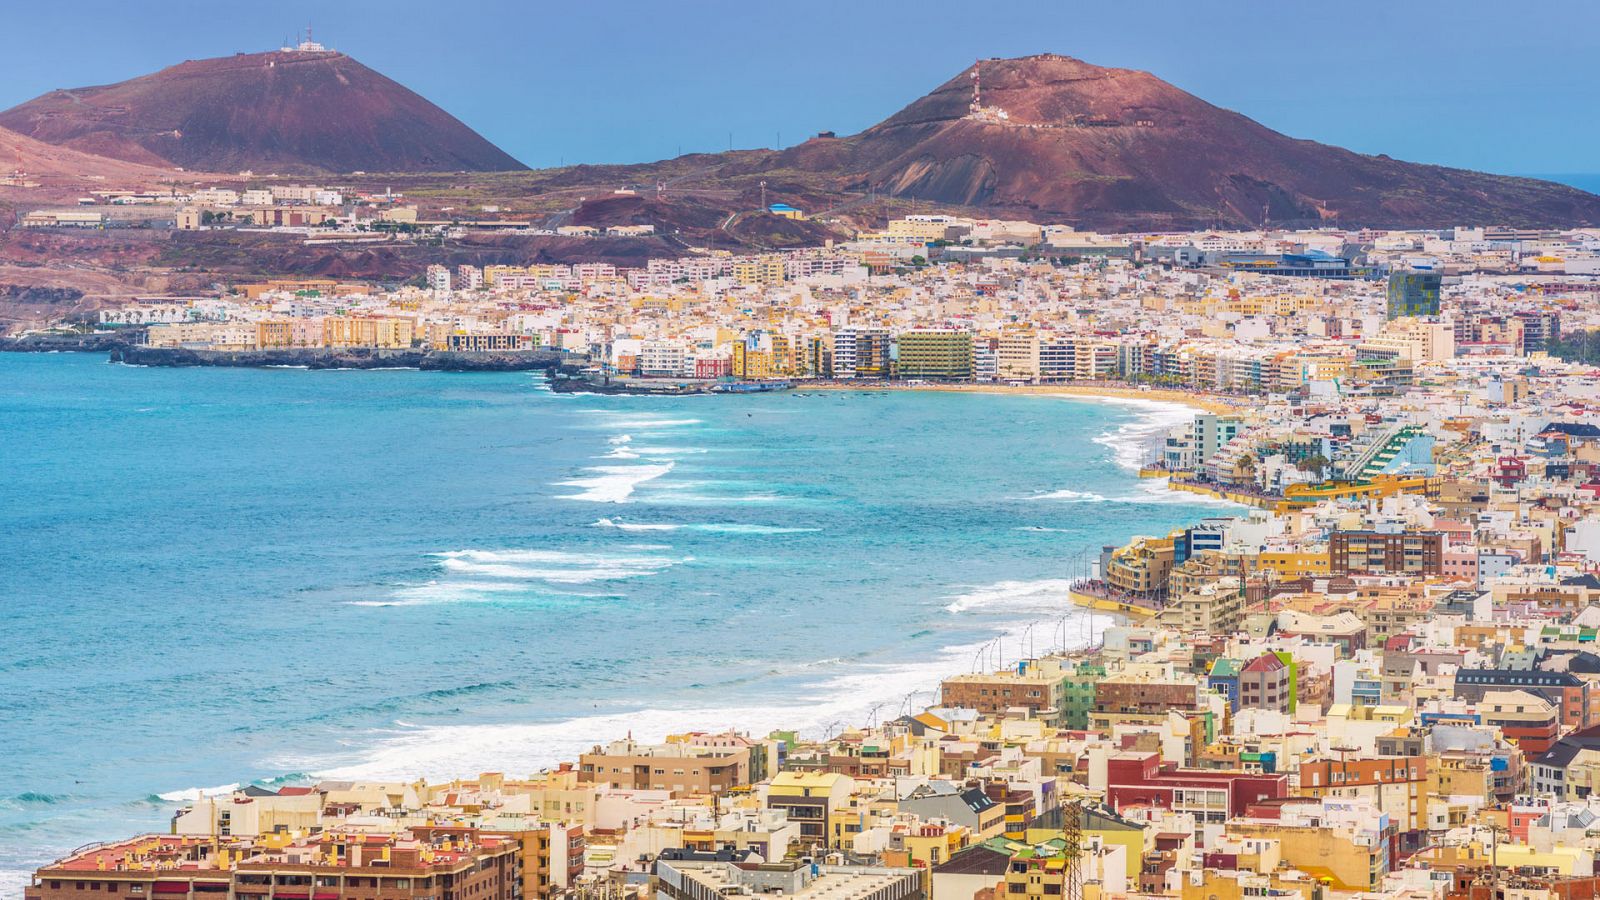 Ciudades para el Siglo XXI - Las Palmas de Gran Canaria, ciudad de la luz